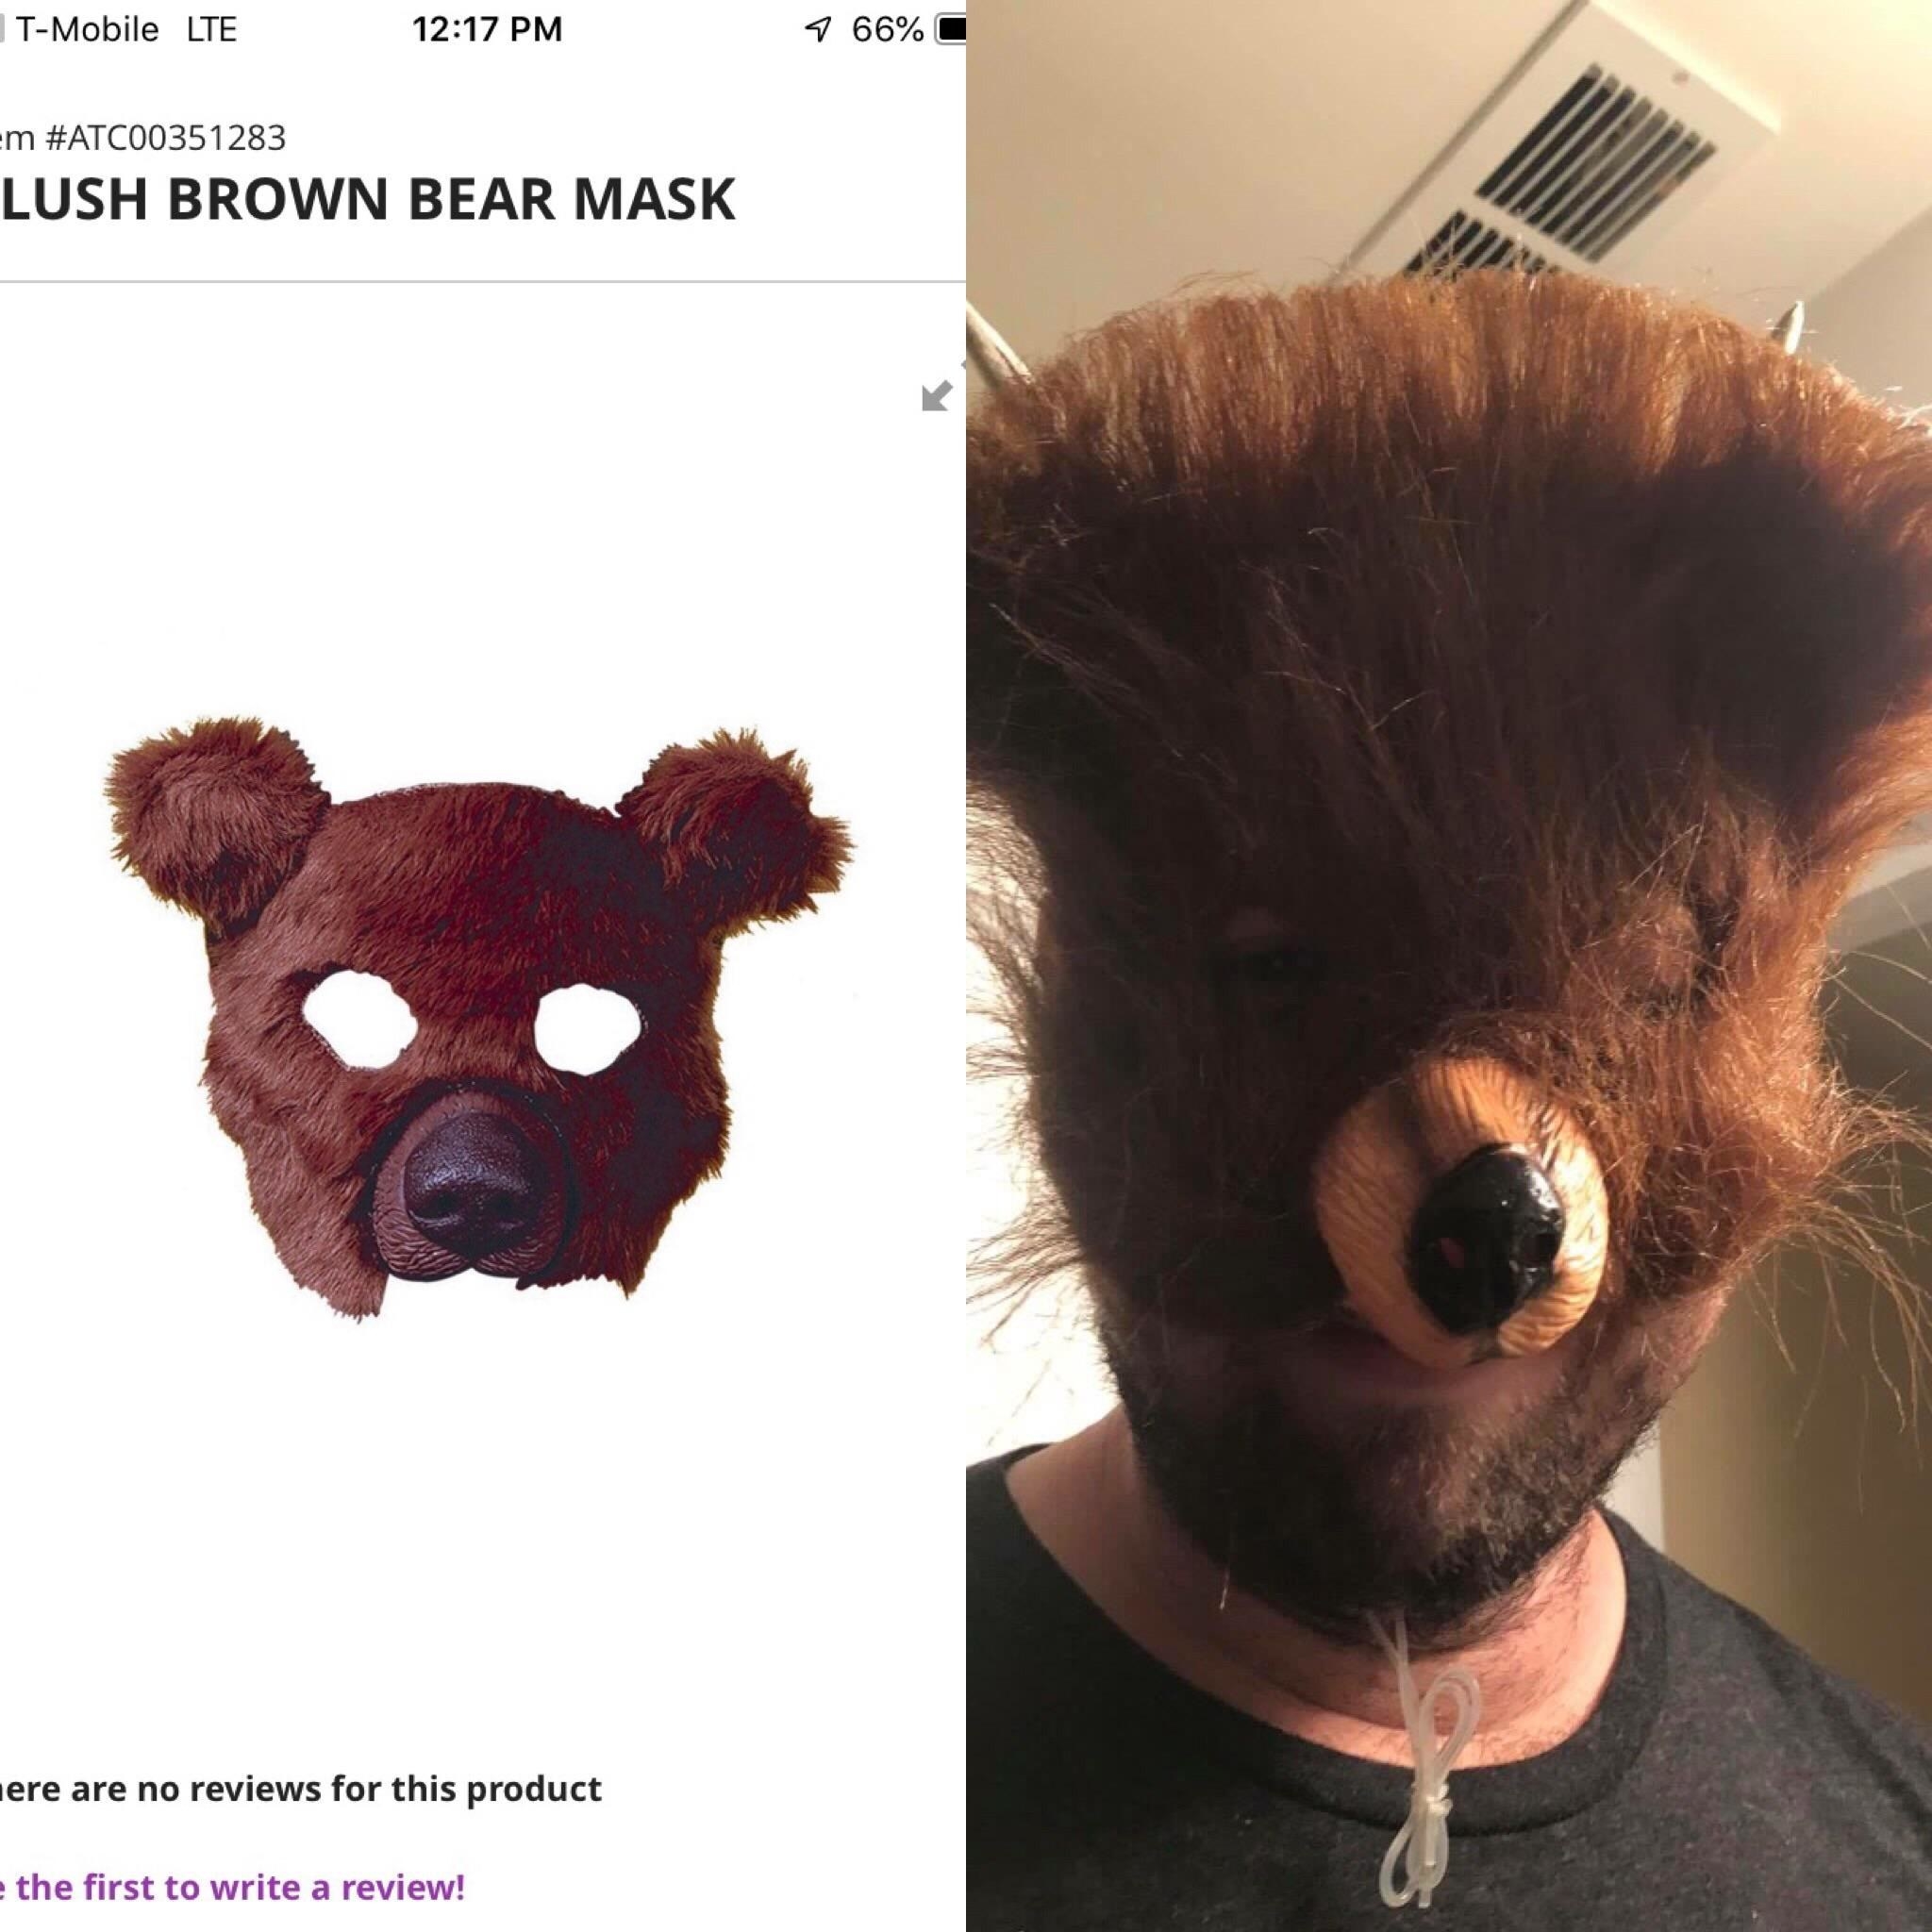 A bear mask